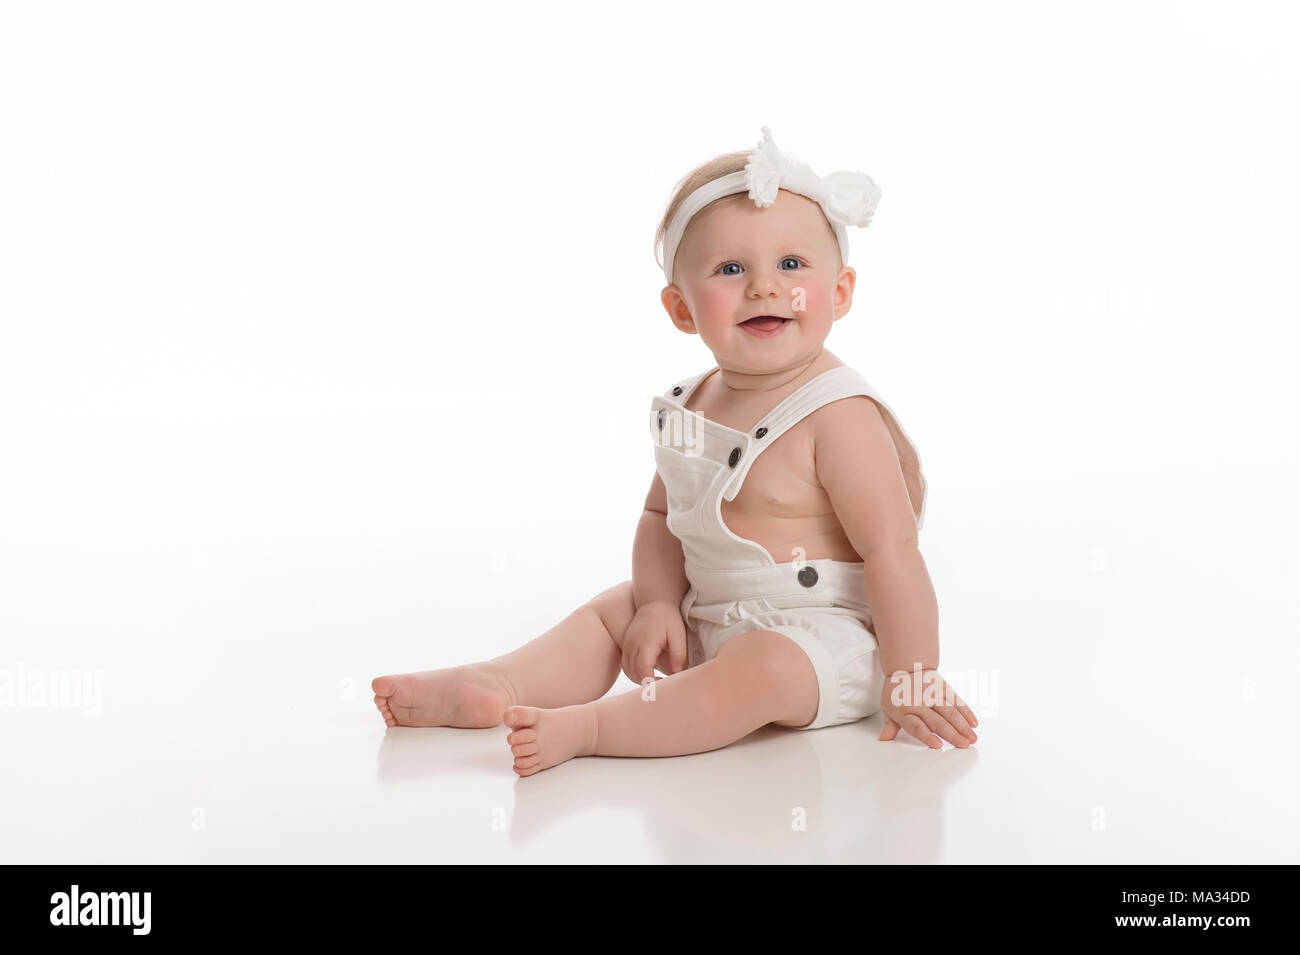 Una sonriente niña de siete meses monos vestidos de blanco. Rodada en el studio en un blanco, perfecto telón de fondo. Foto de stock